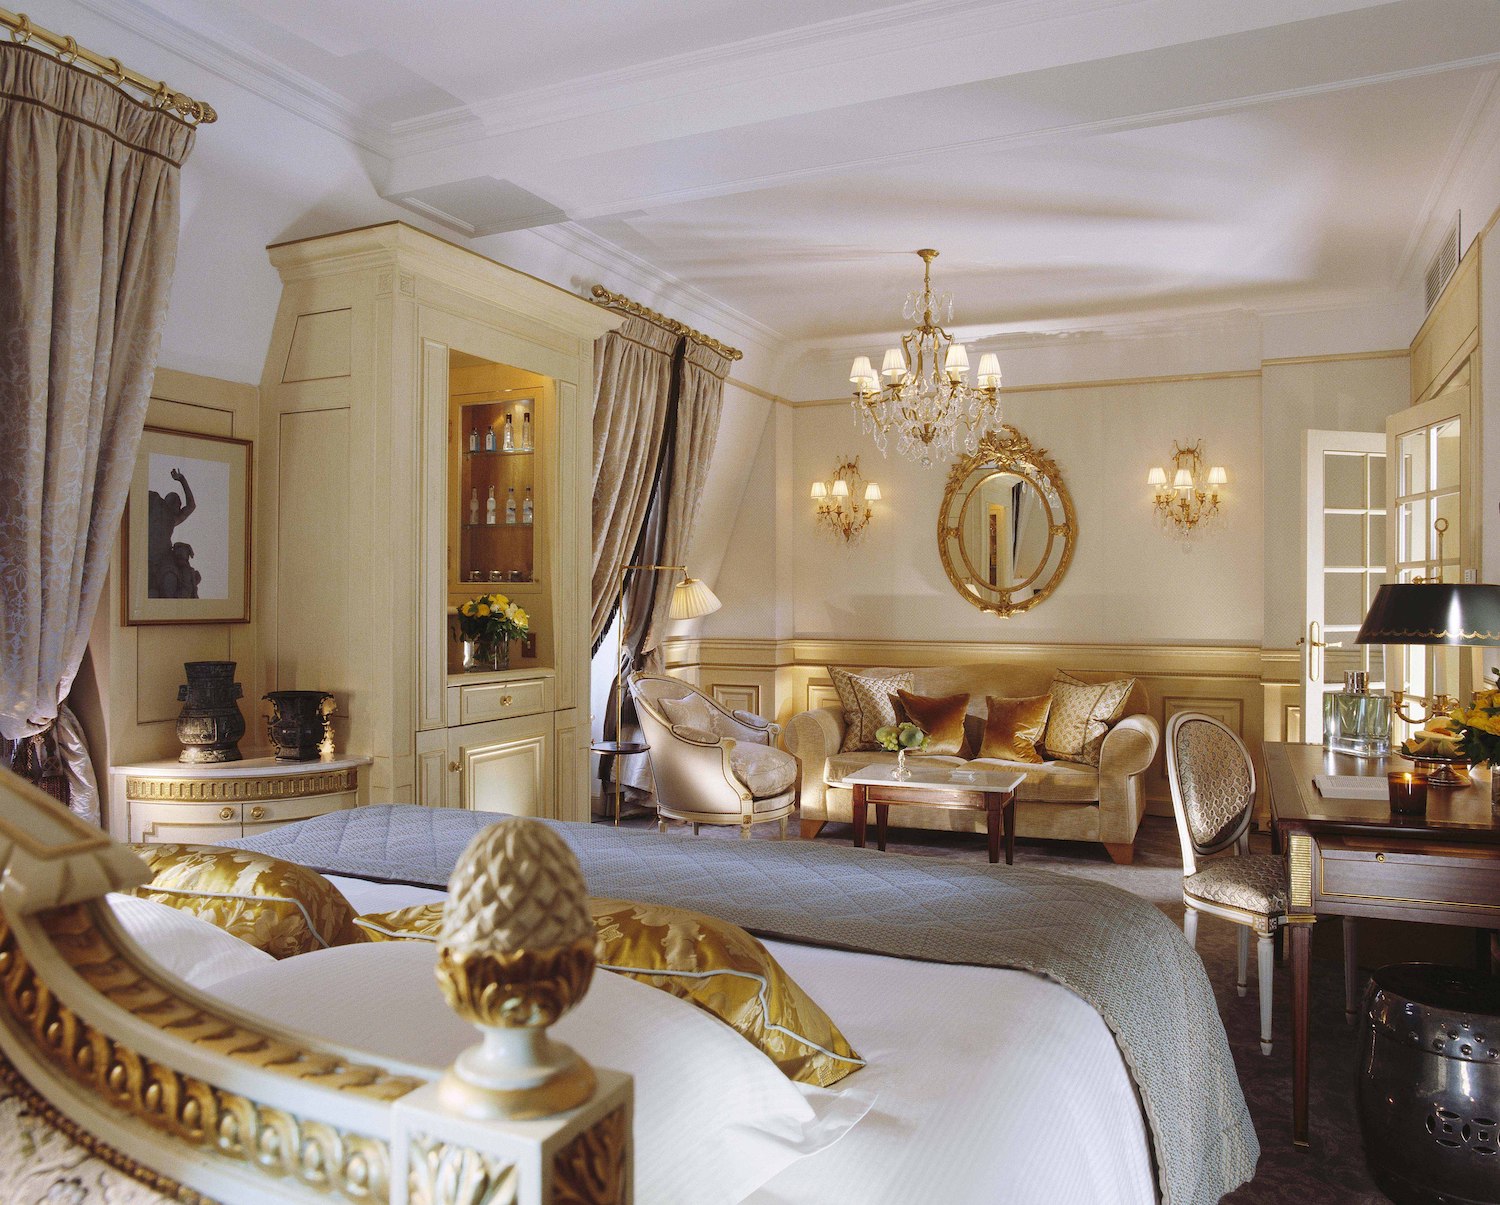 Best View Hotels in Paris - Ei Ei Dior Europe Travel